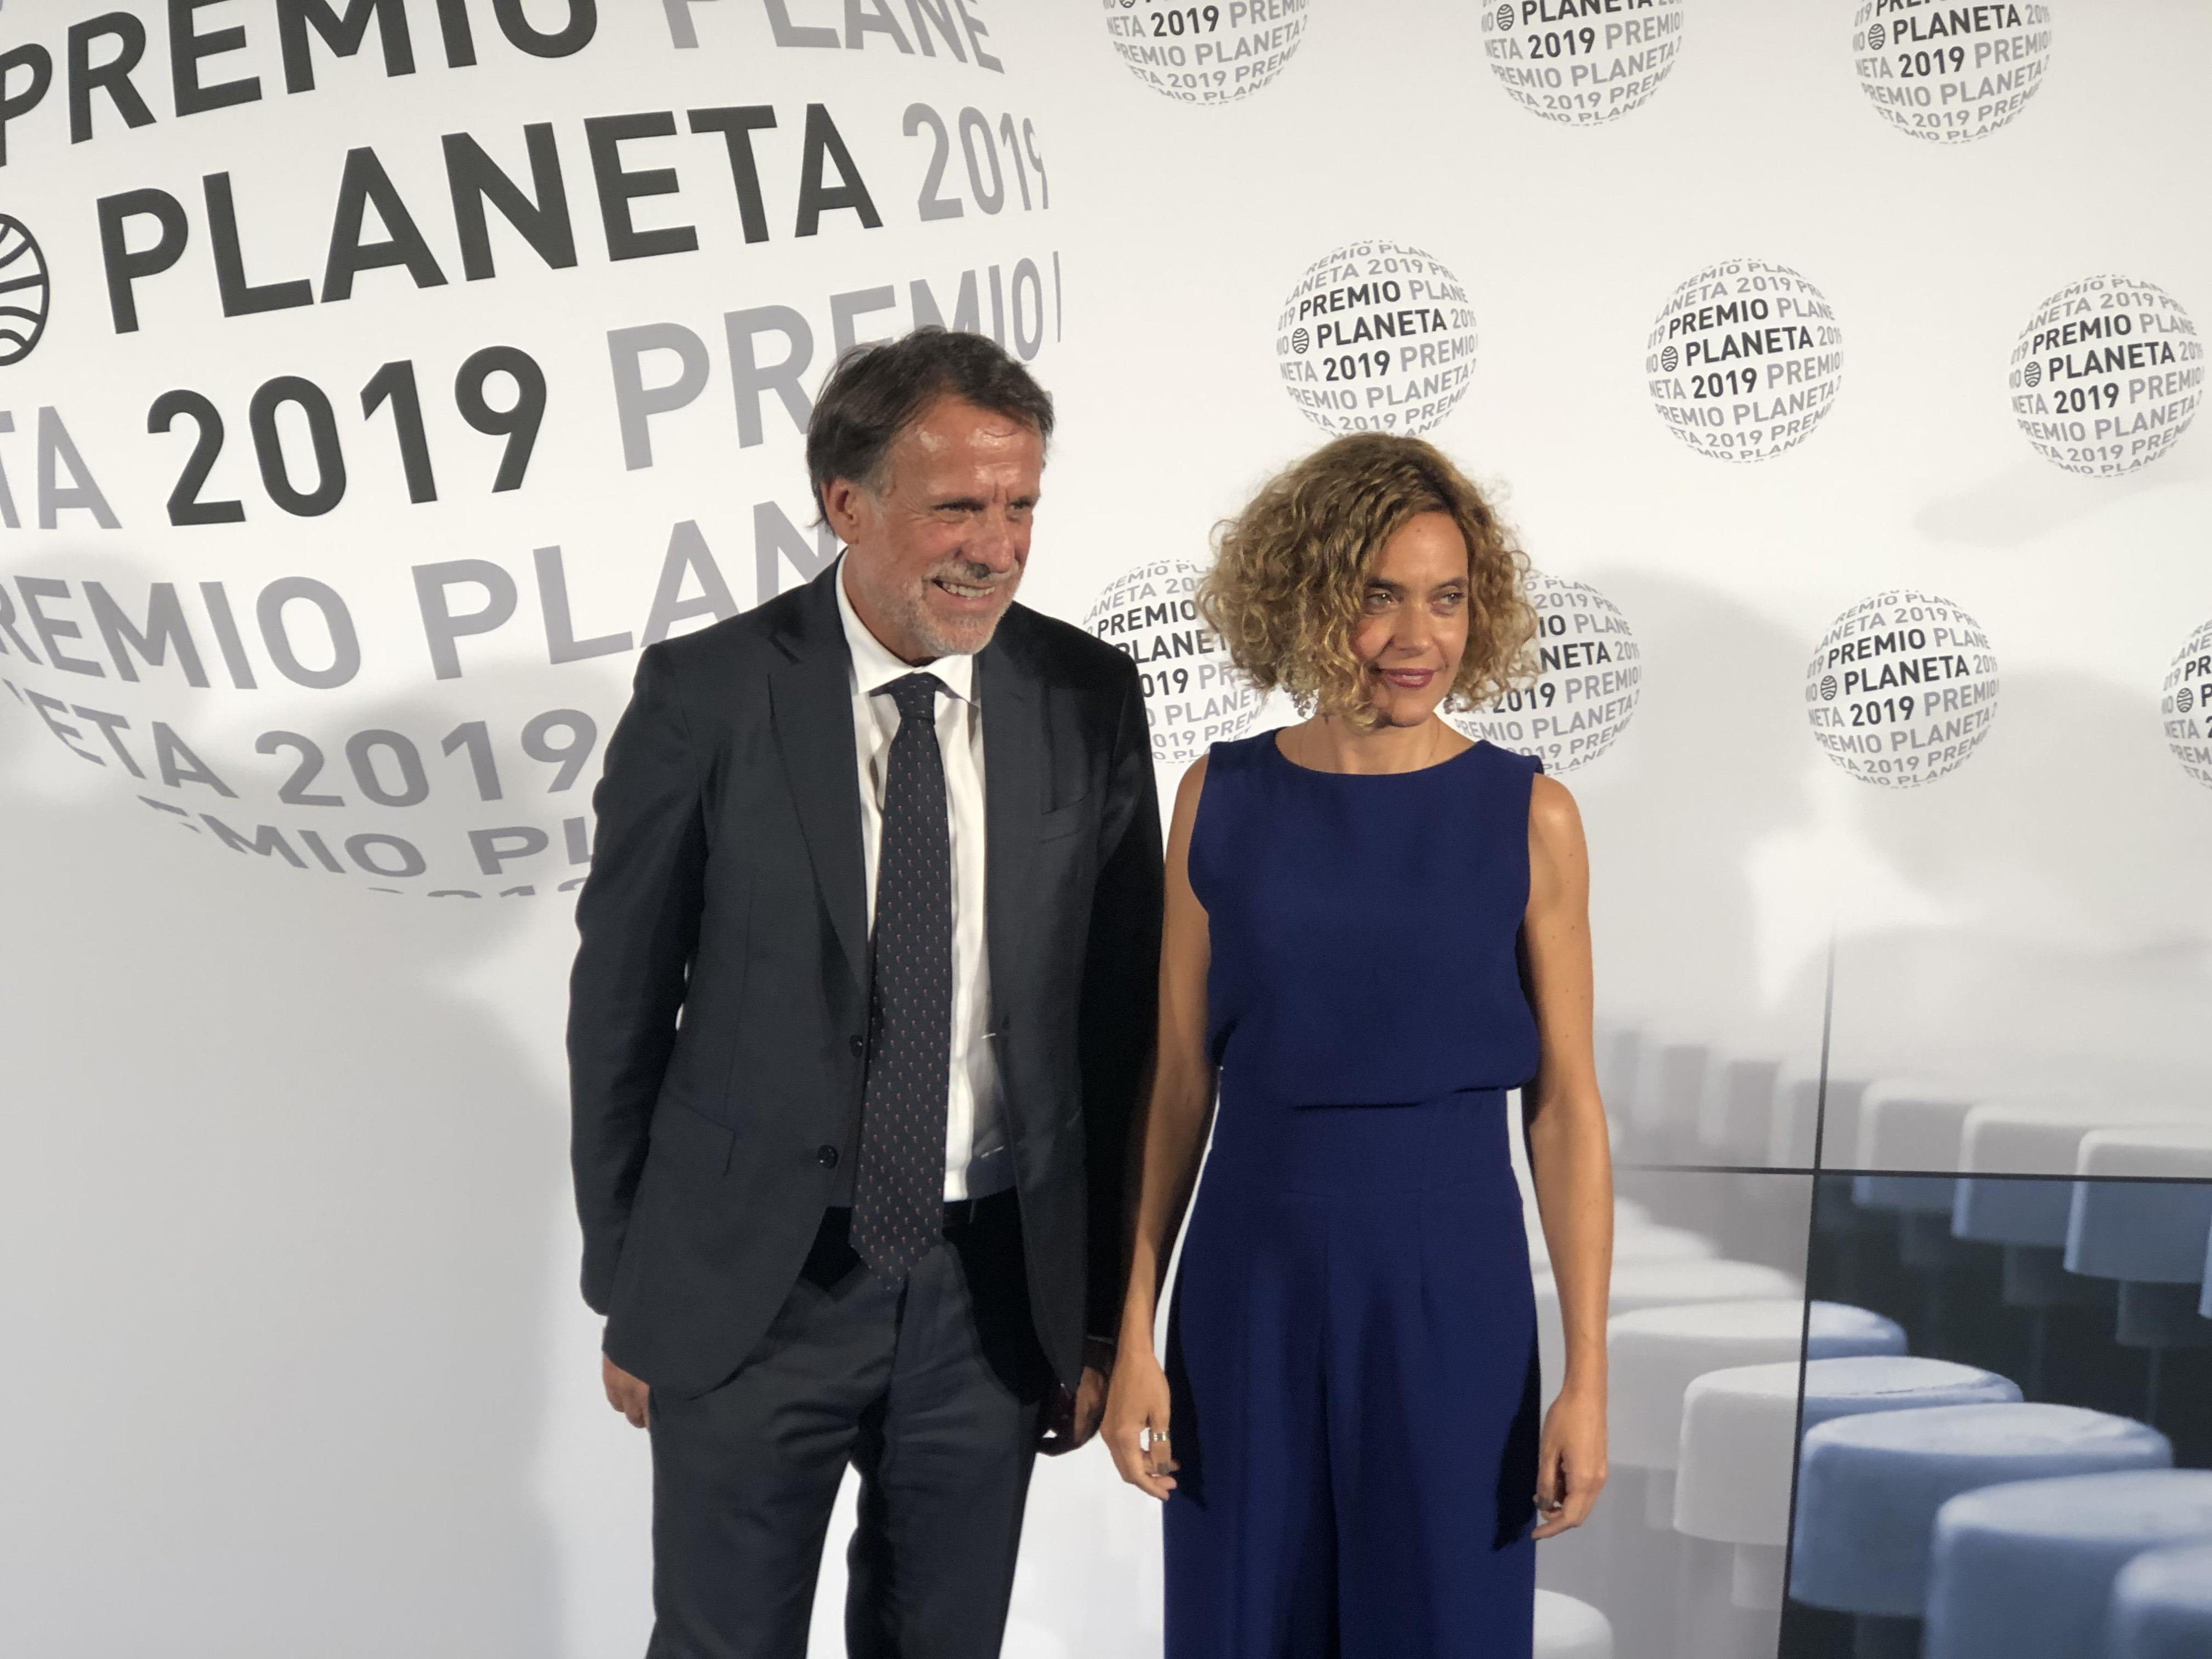 Meritxell Batet, presidenta del Congreso, junto al presidente de Planeta, José Creuheras / CG